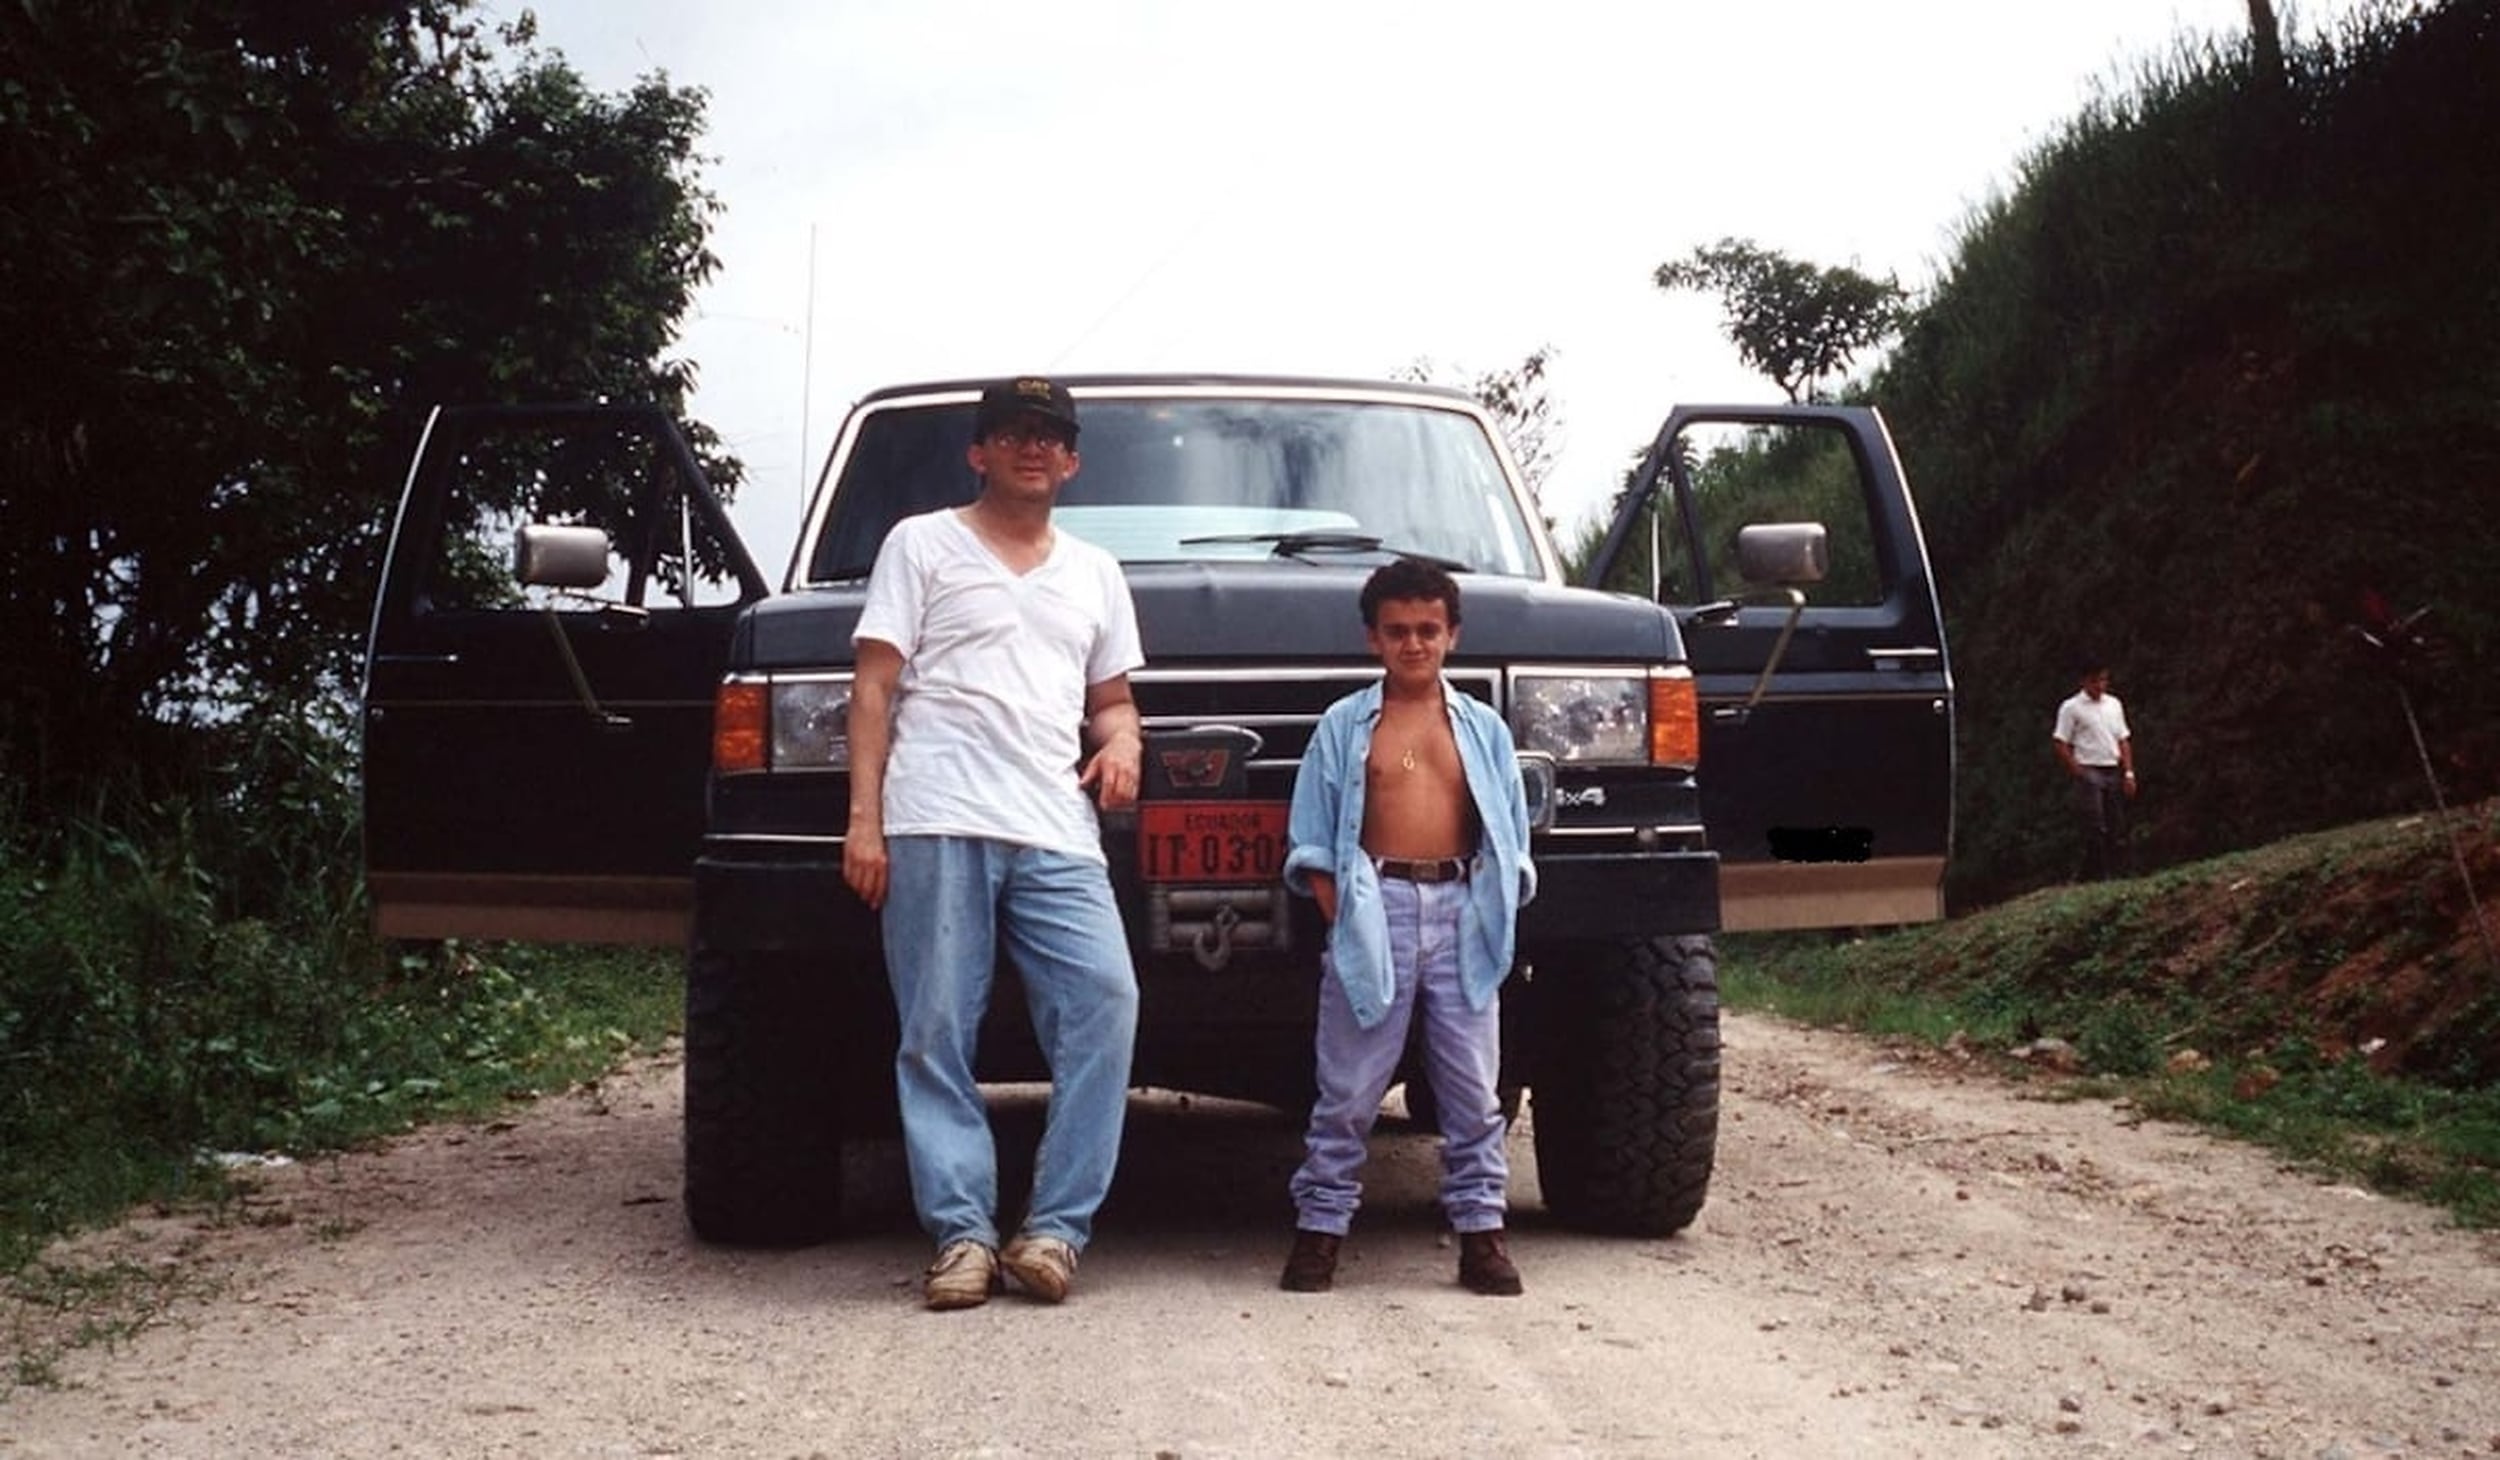 El endocrinónolo Javier Guevara-Aguirre (izquierda) junto a Lucho, un afectado por síndrome de Laron de la provincia de El Oro, Ecuador, en 1994